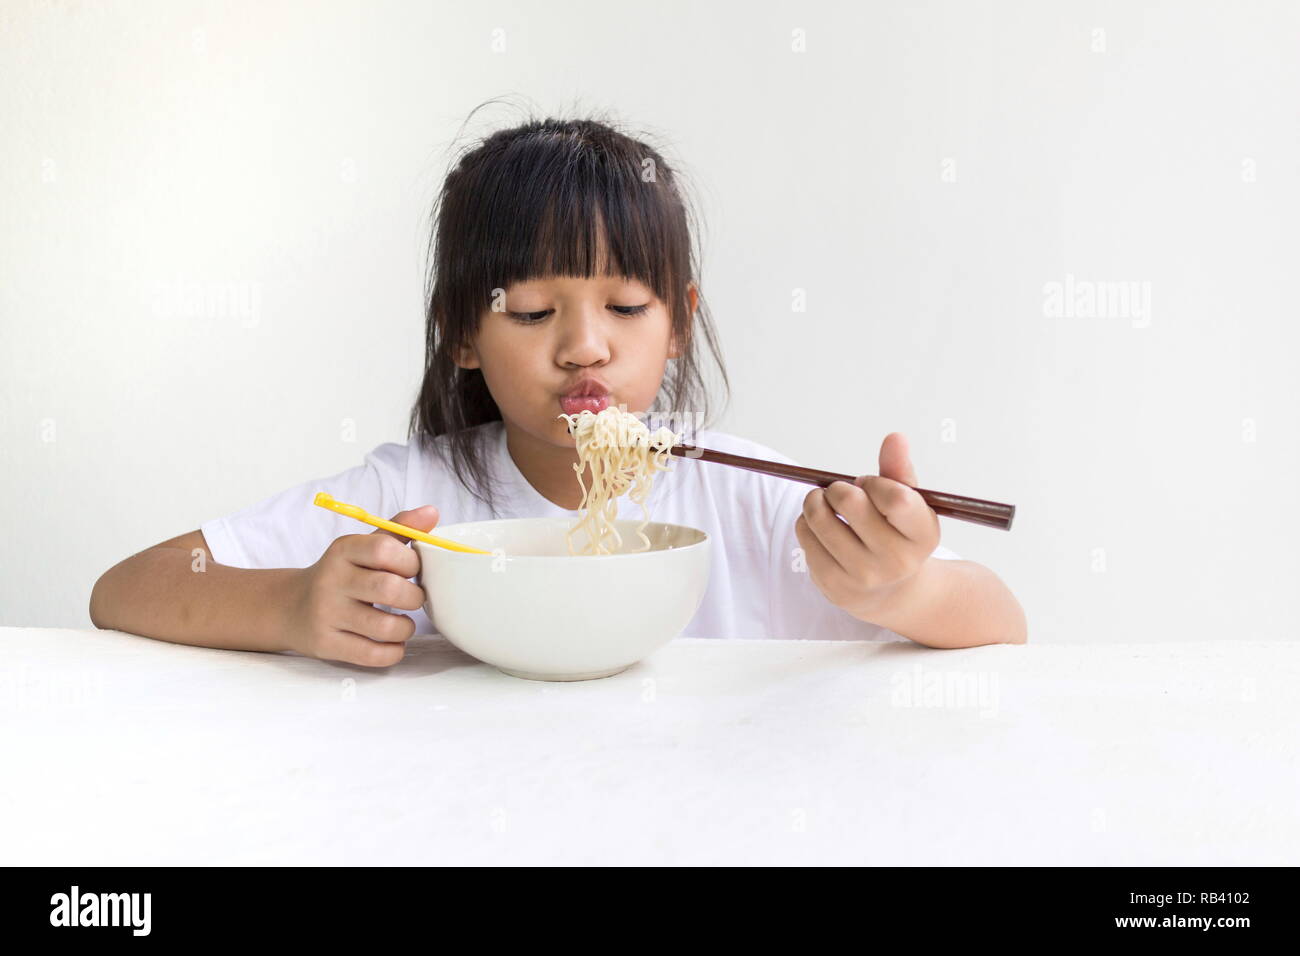 Retrato de niño niña asiática comiendo fideos instantáneos con mesa de madera blanca y fondo blanco. Foto de stock